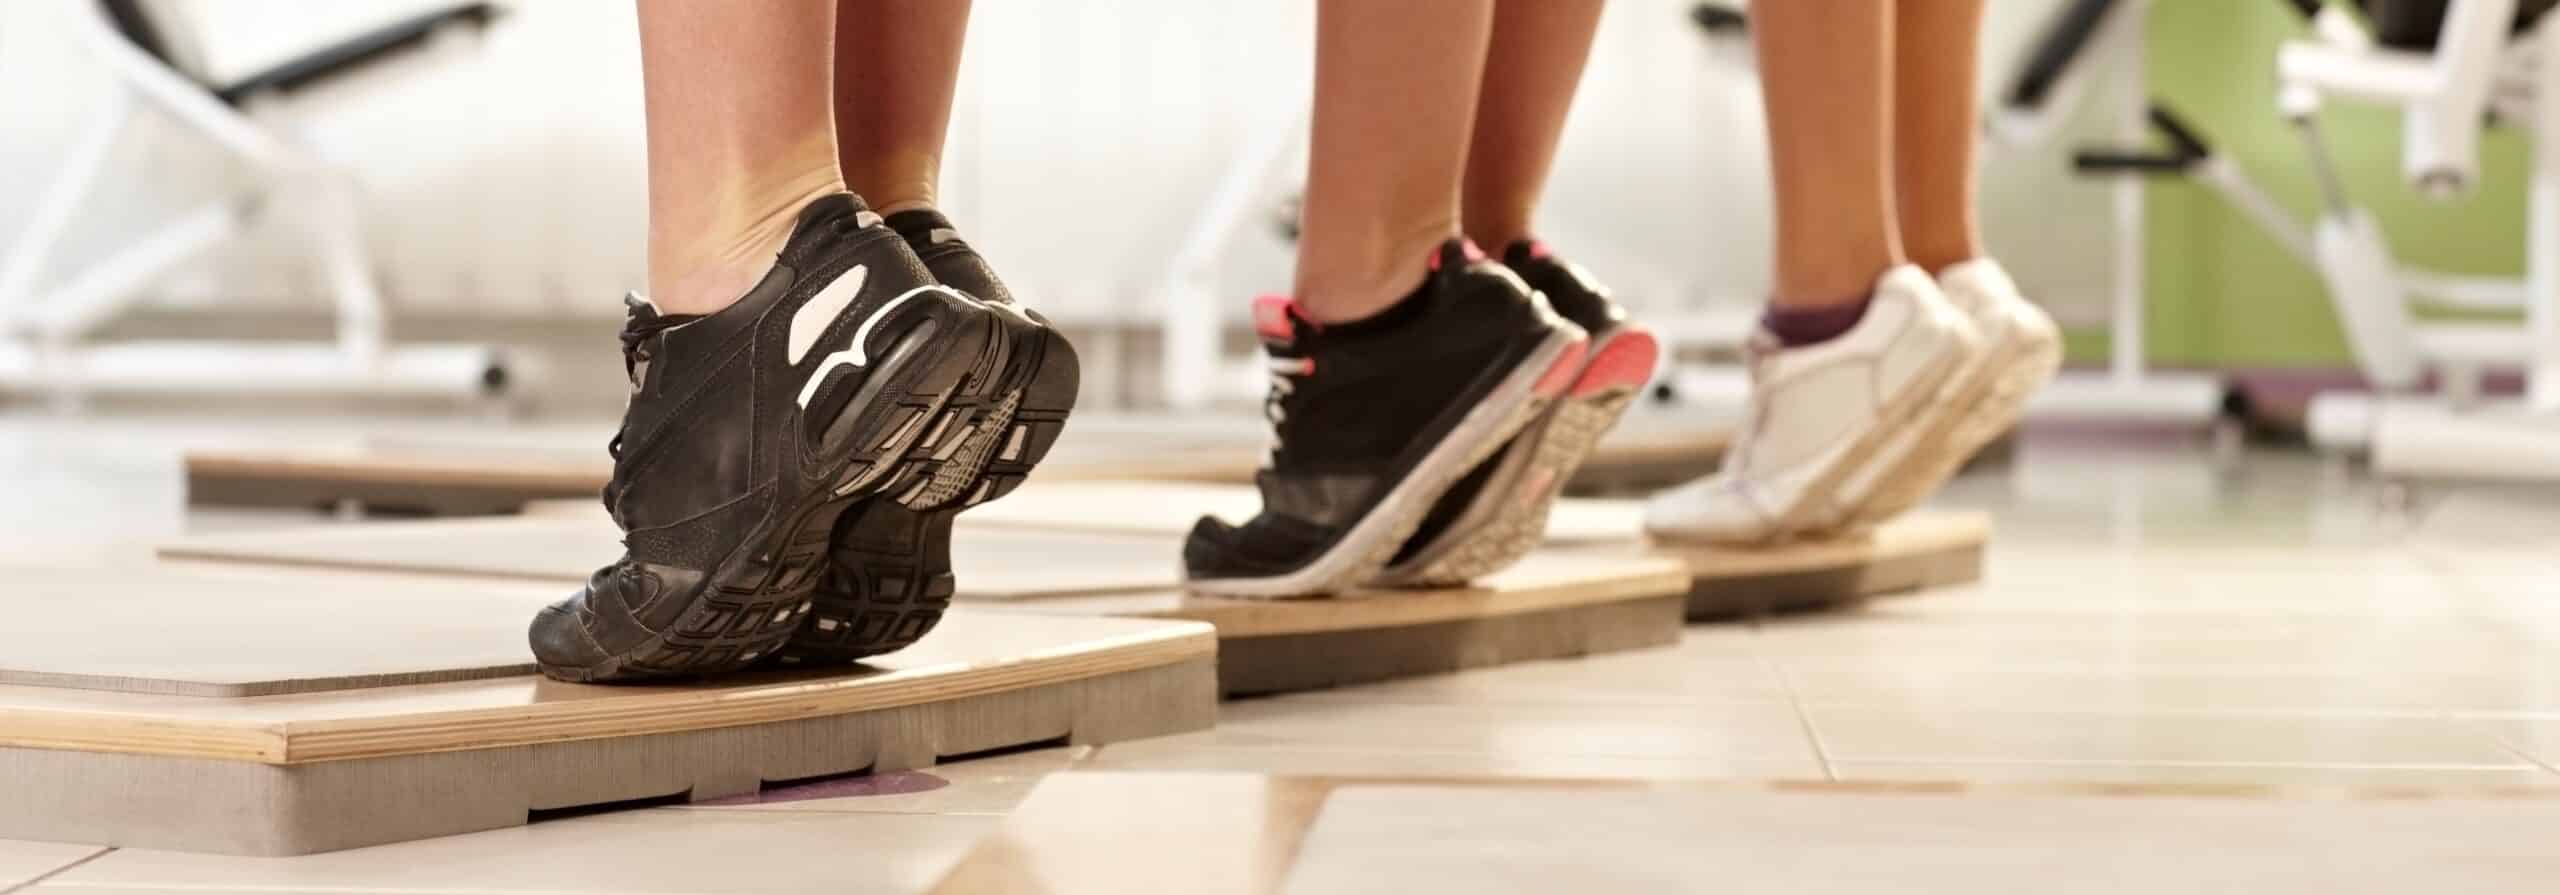 Läuferin beim Training mit Achillessehnenschmerzen durch Achillessehnenentzündung, Übungen für die Achillessehne